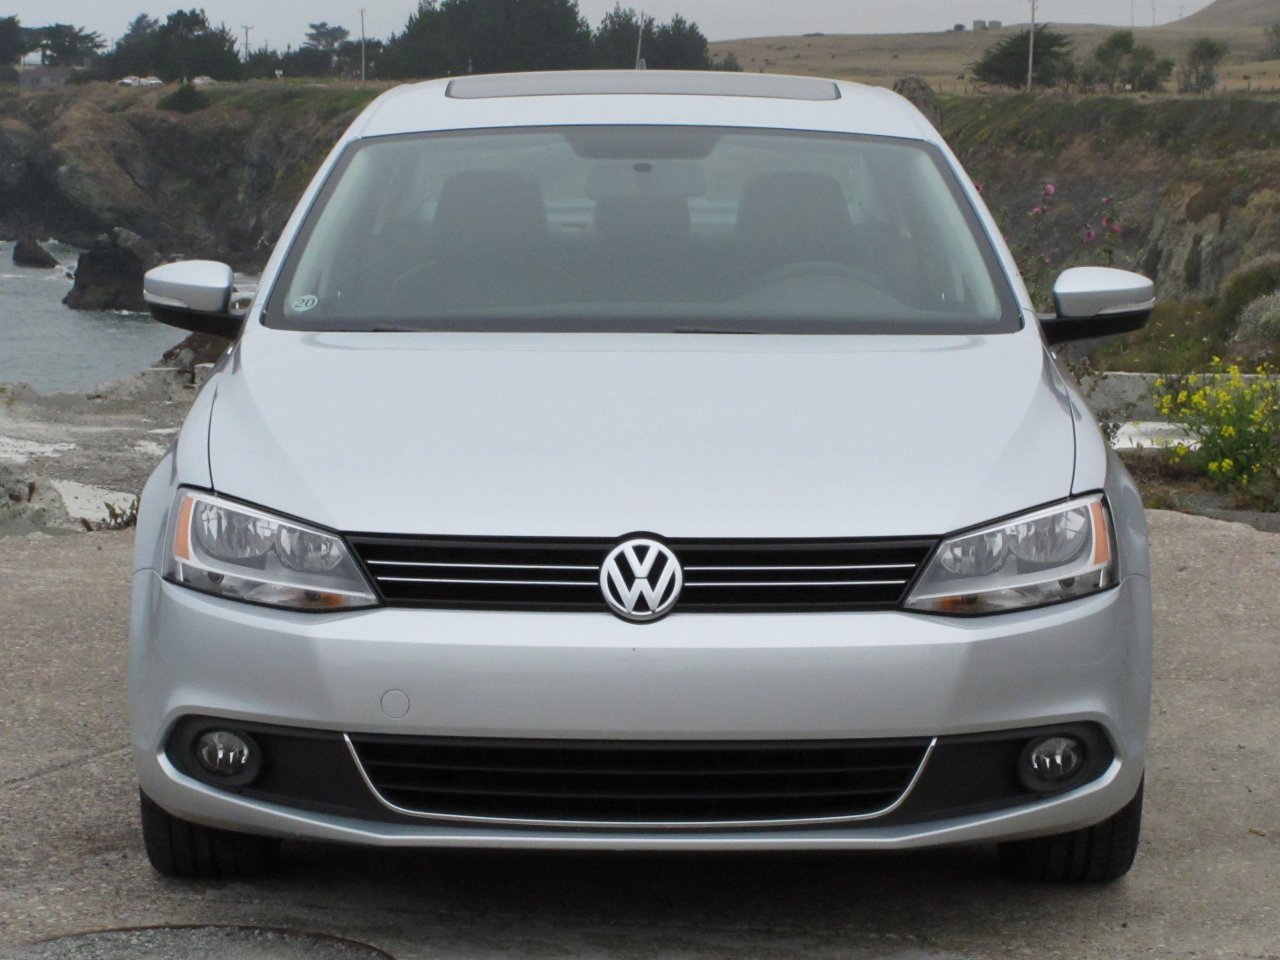  2011 Volkswagen Jetta TDI 2.0L